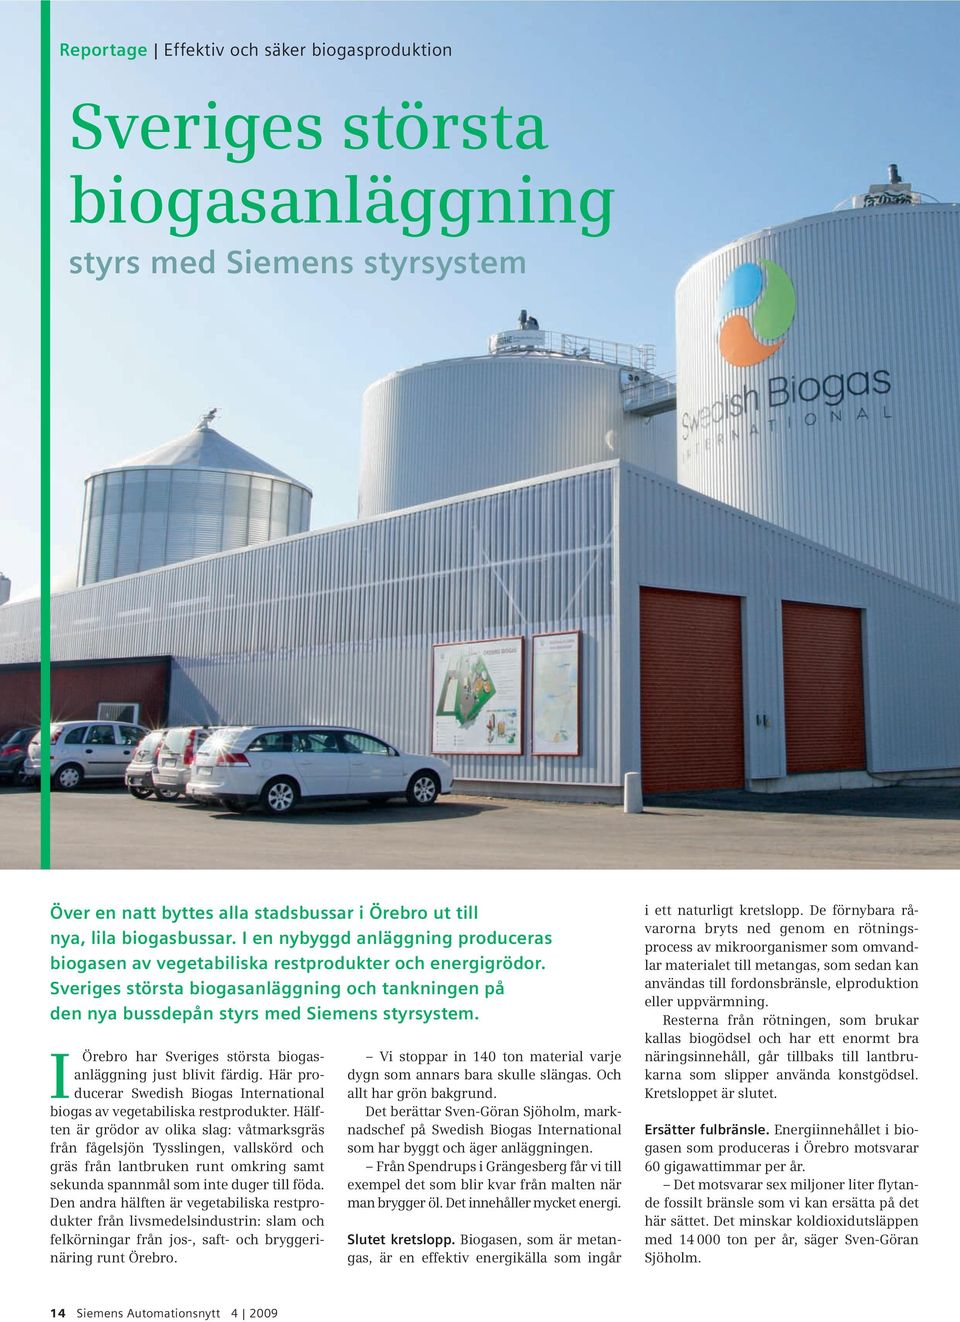 I Örebro har Sveriges största biogasanläggning just blivit färdig. Här producerar Swedish Biogas International biogas av vegetabiliska restprodukter.